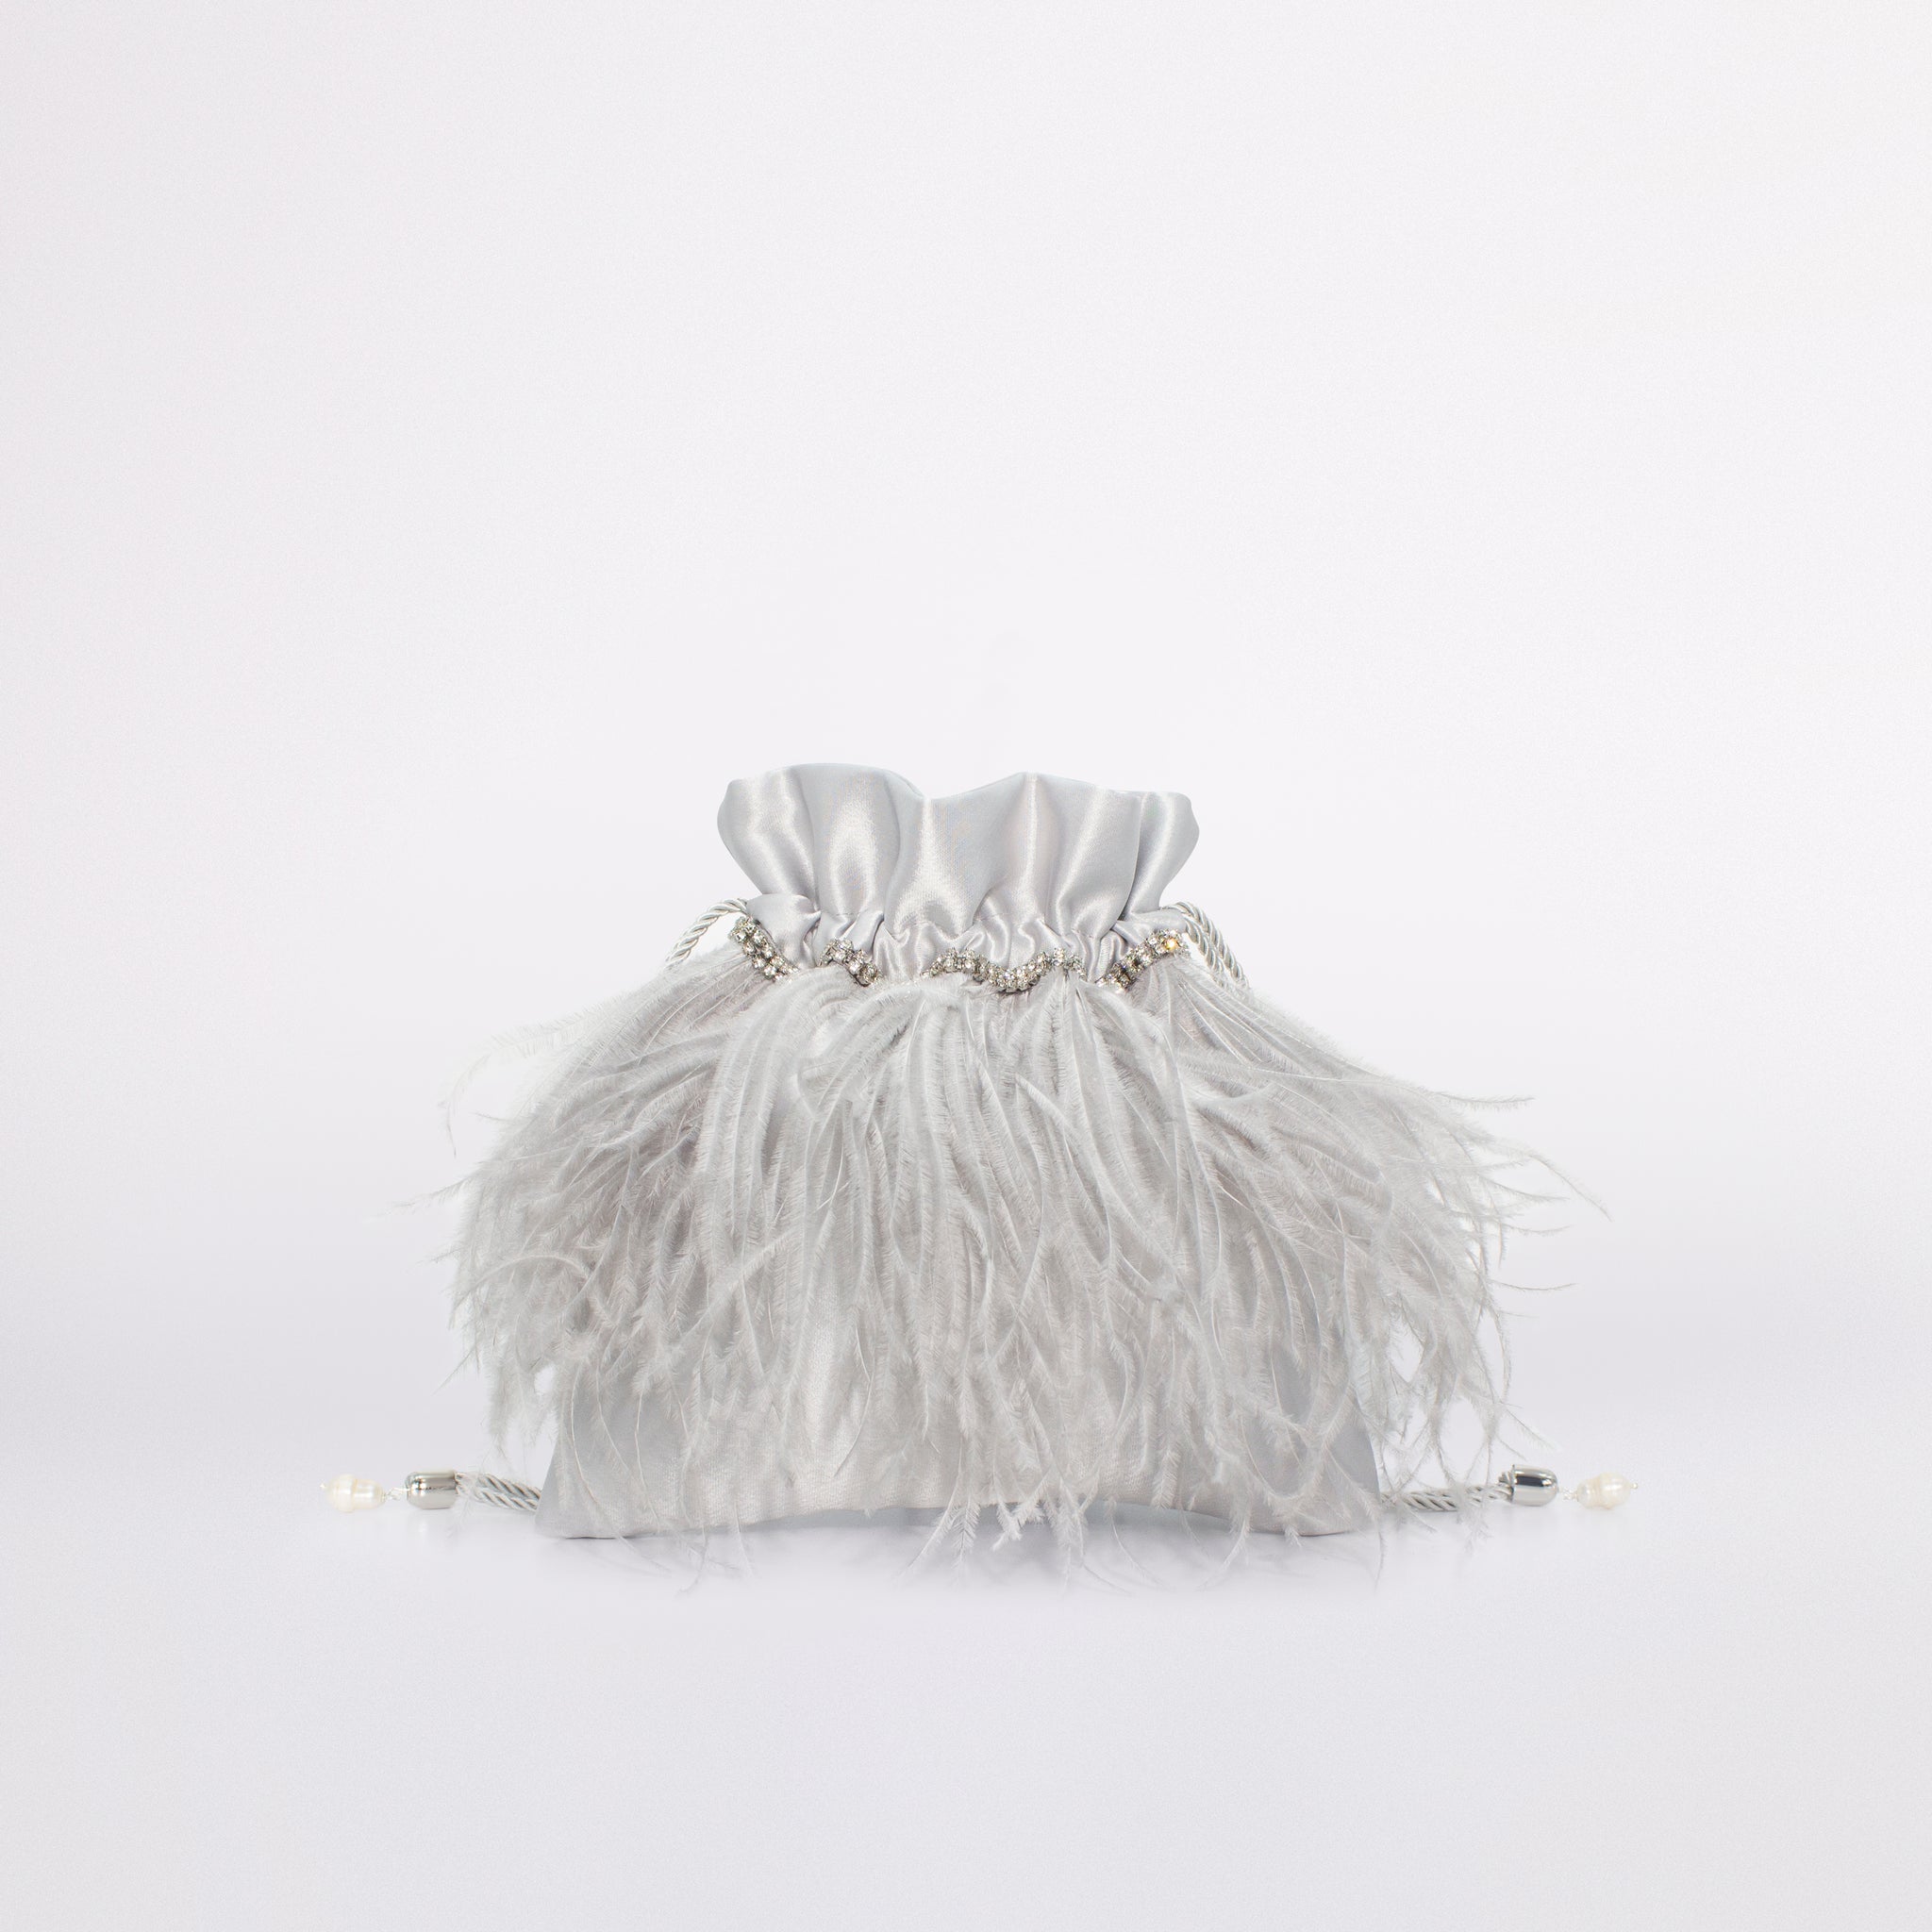 Mini Feathers Bag in colorazione grigio argento